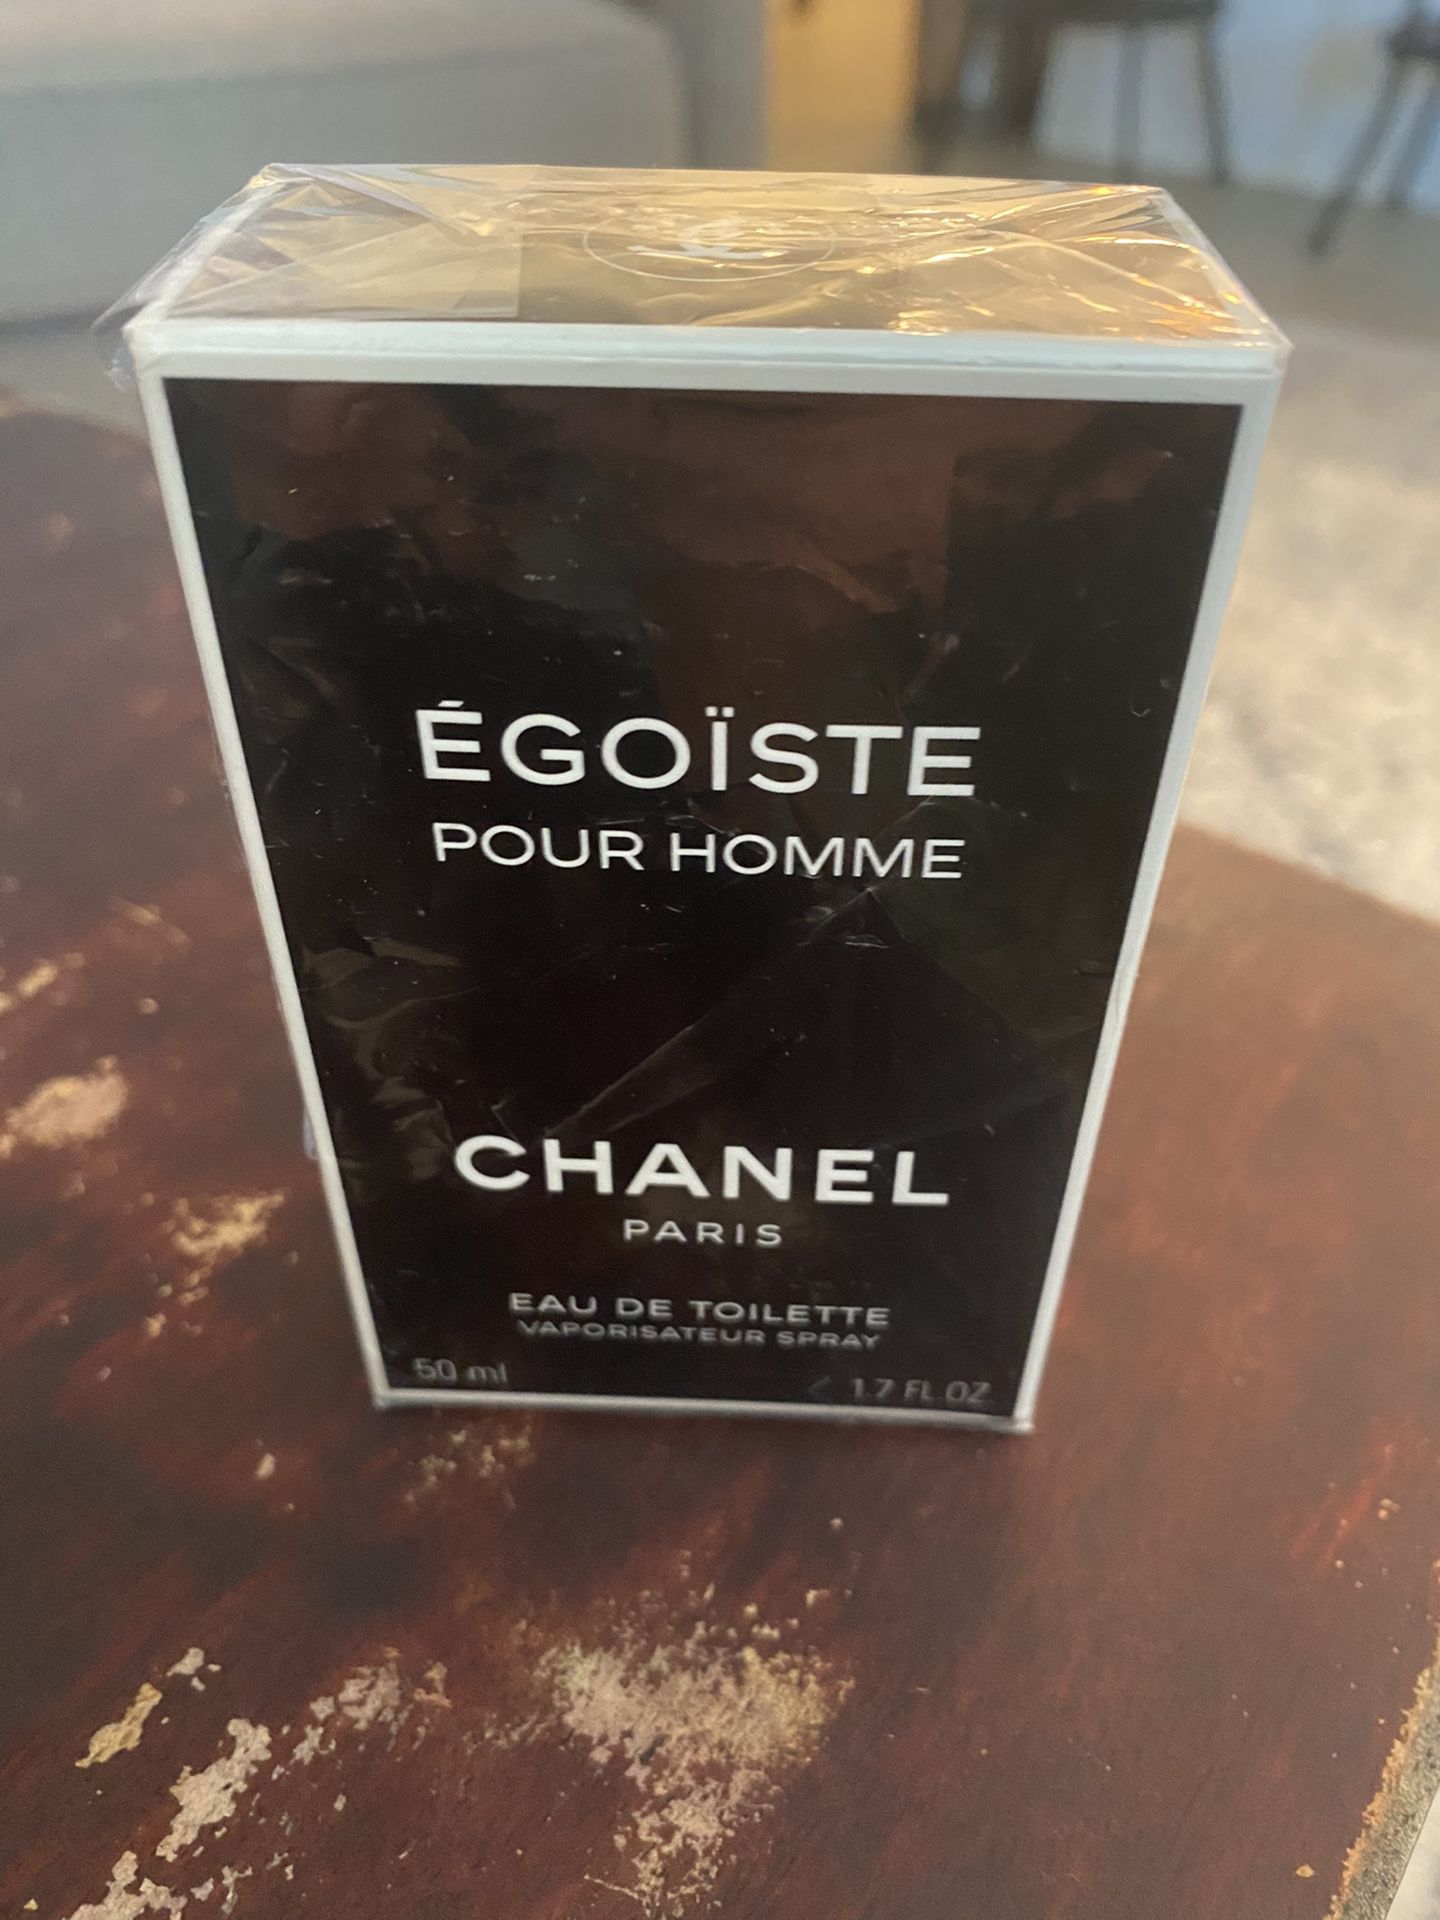 Chanel Egoiste Pour Homme Cologne